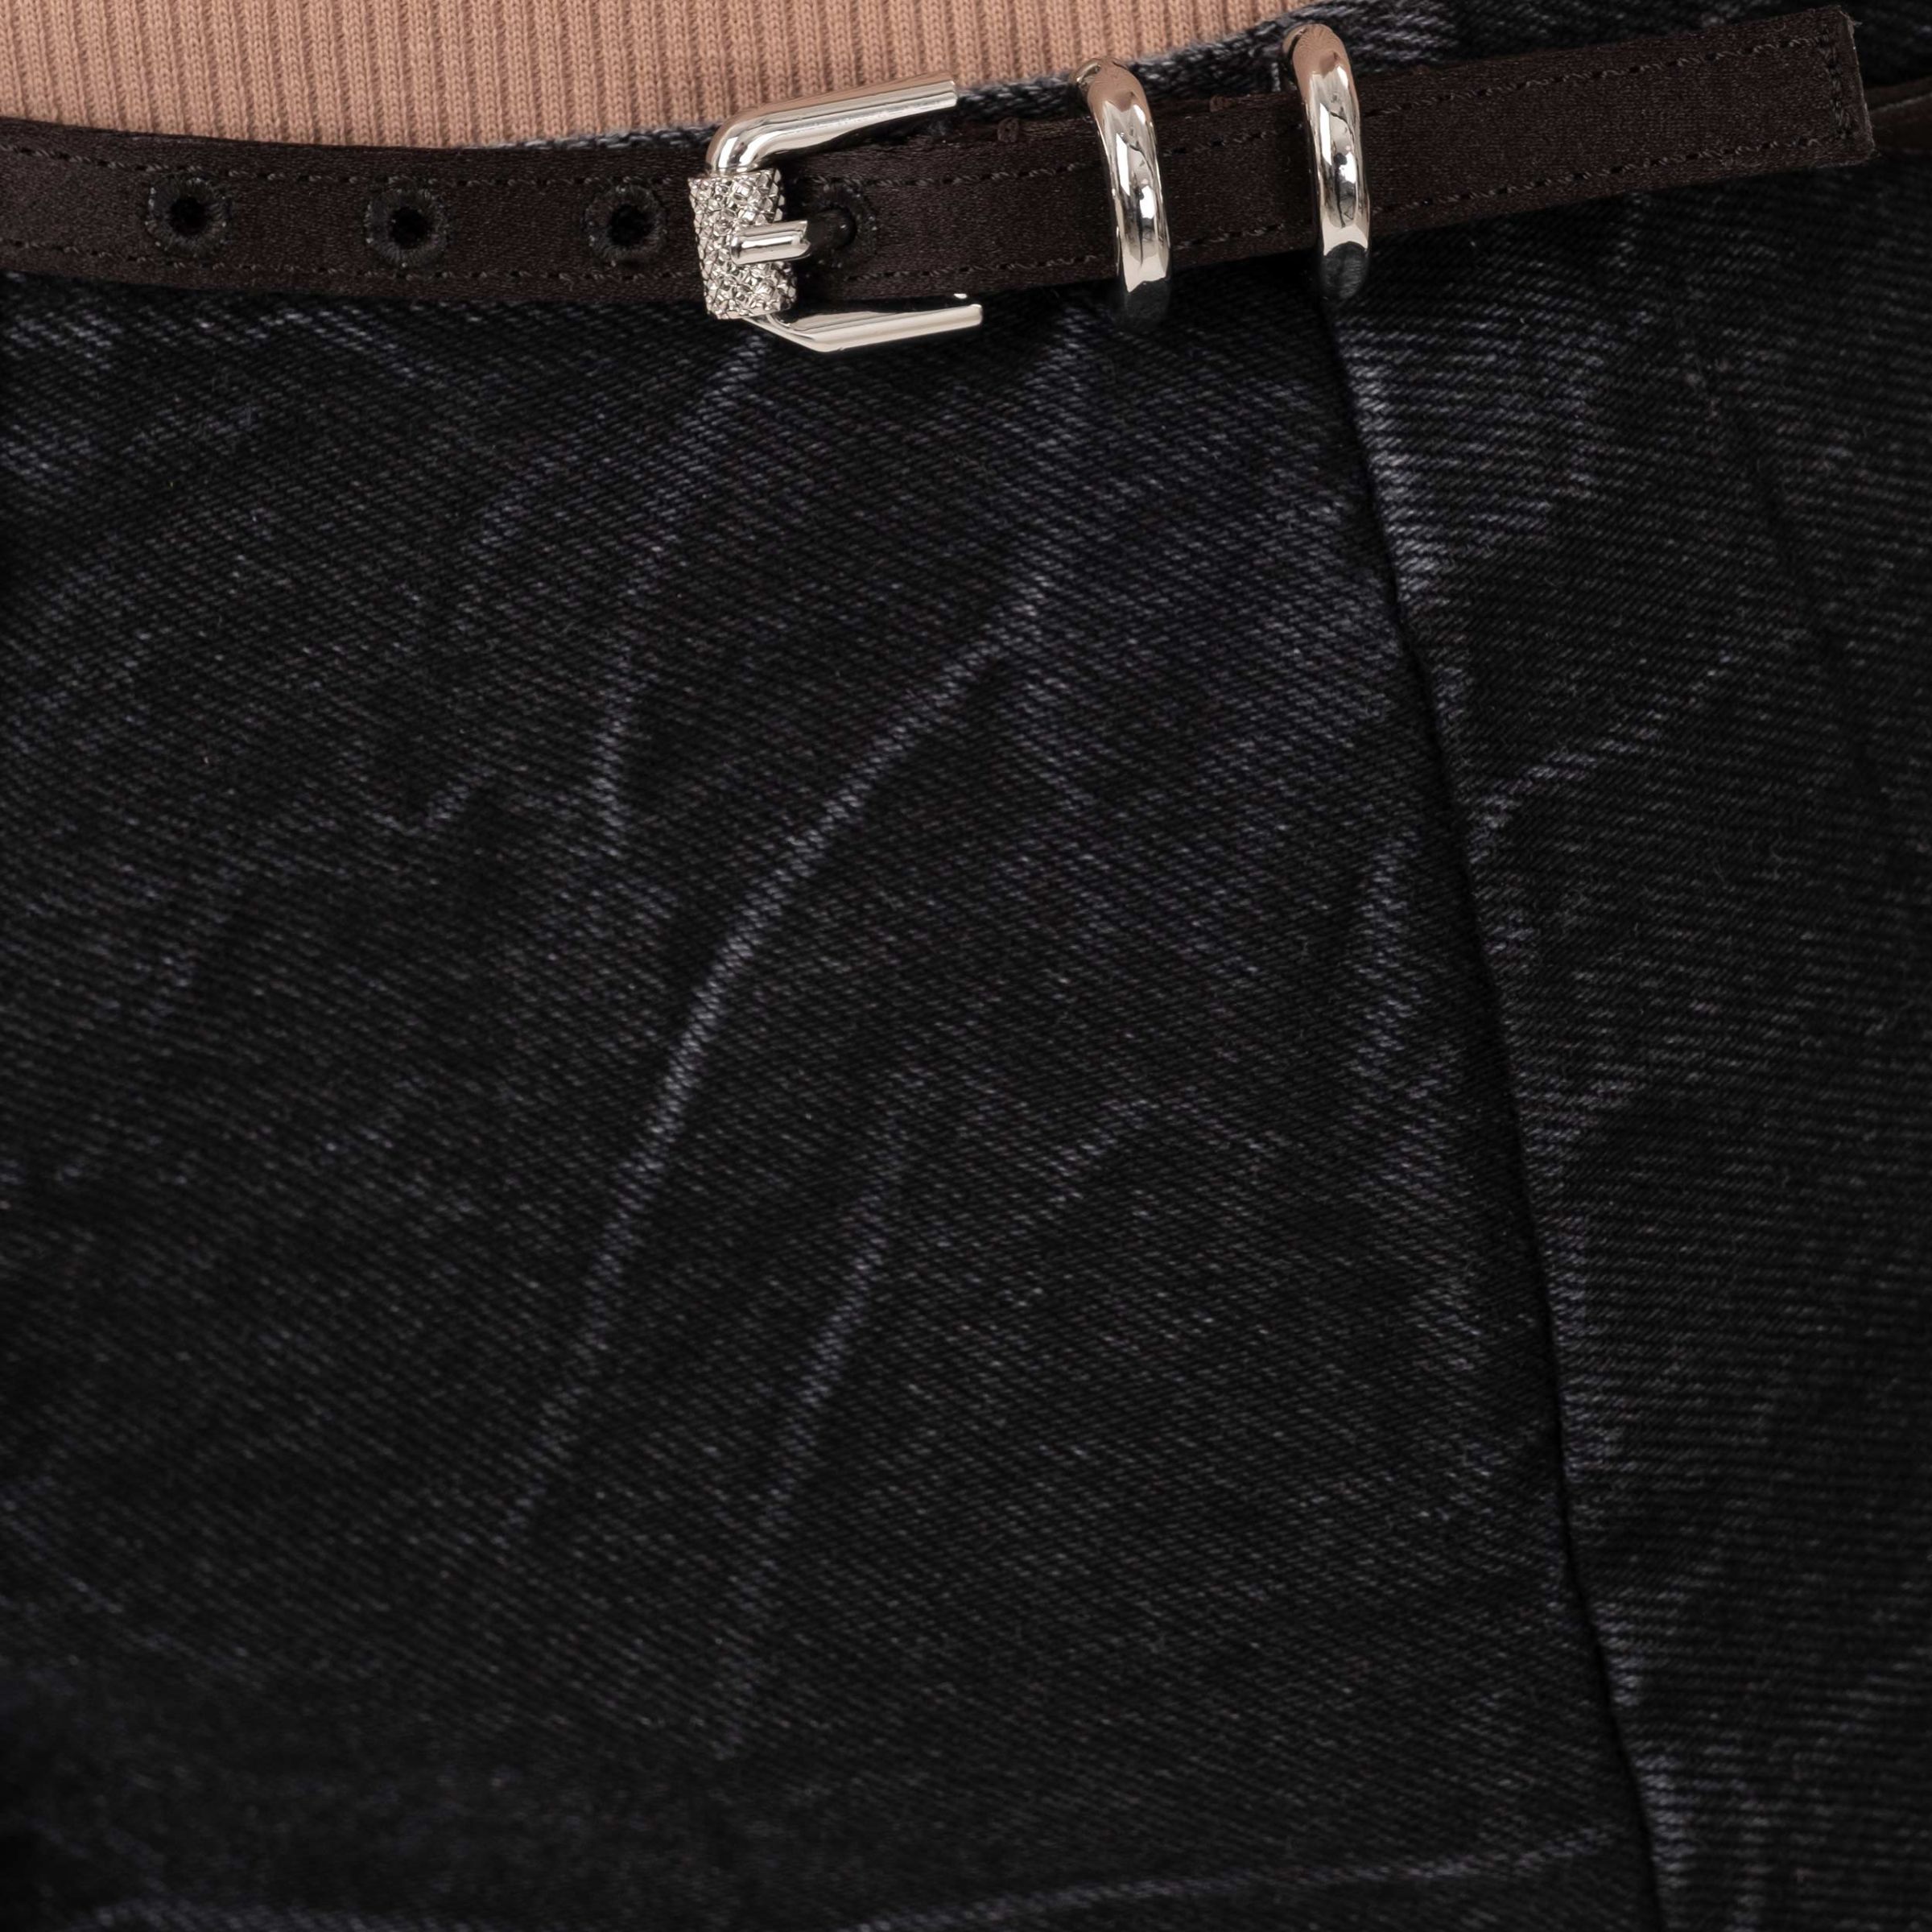 Юбка-мини Givenchy черная